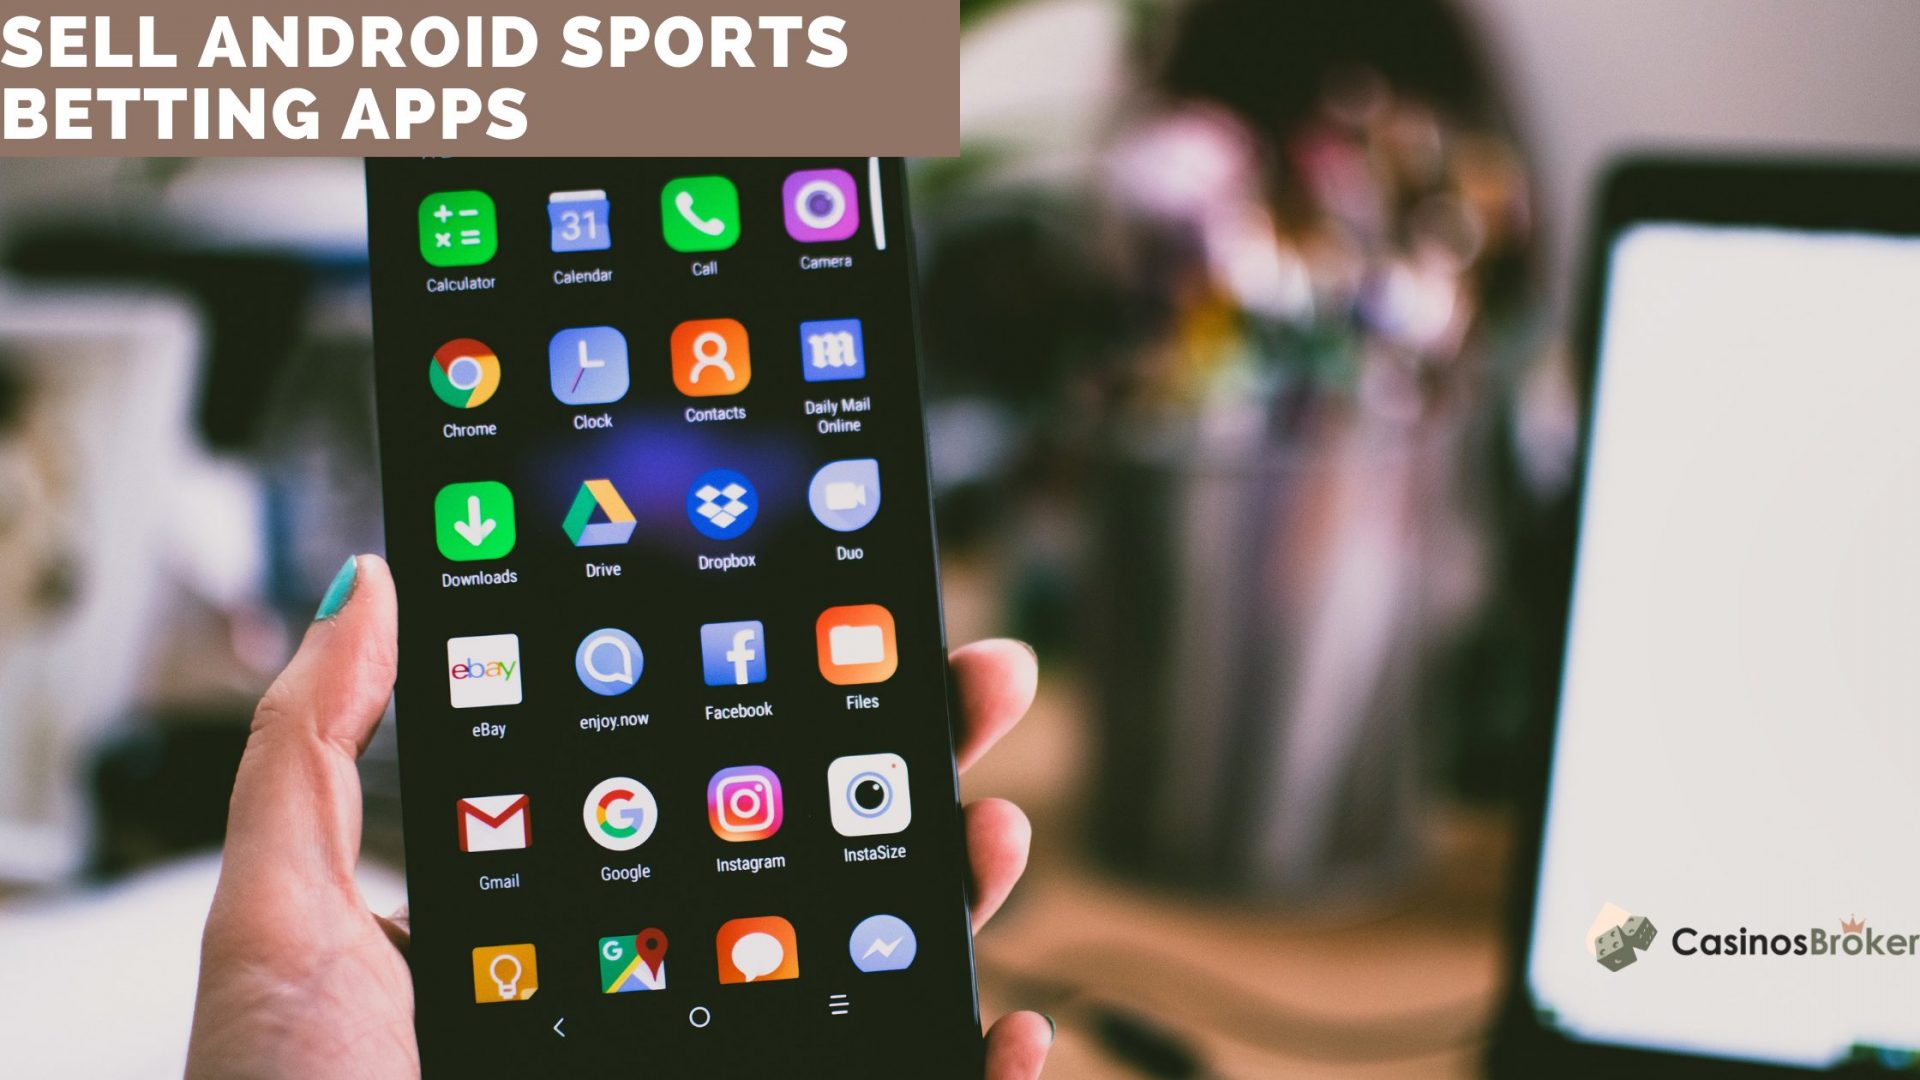 Android Sportweddenschappen Apps verkopen